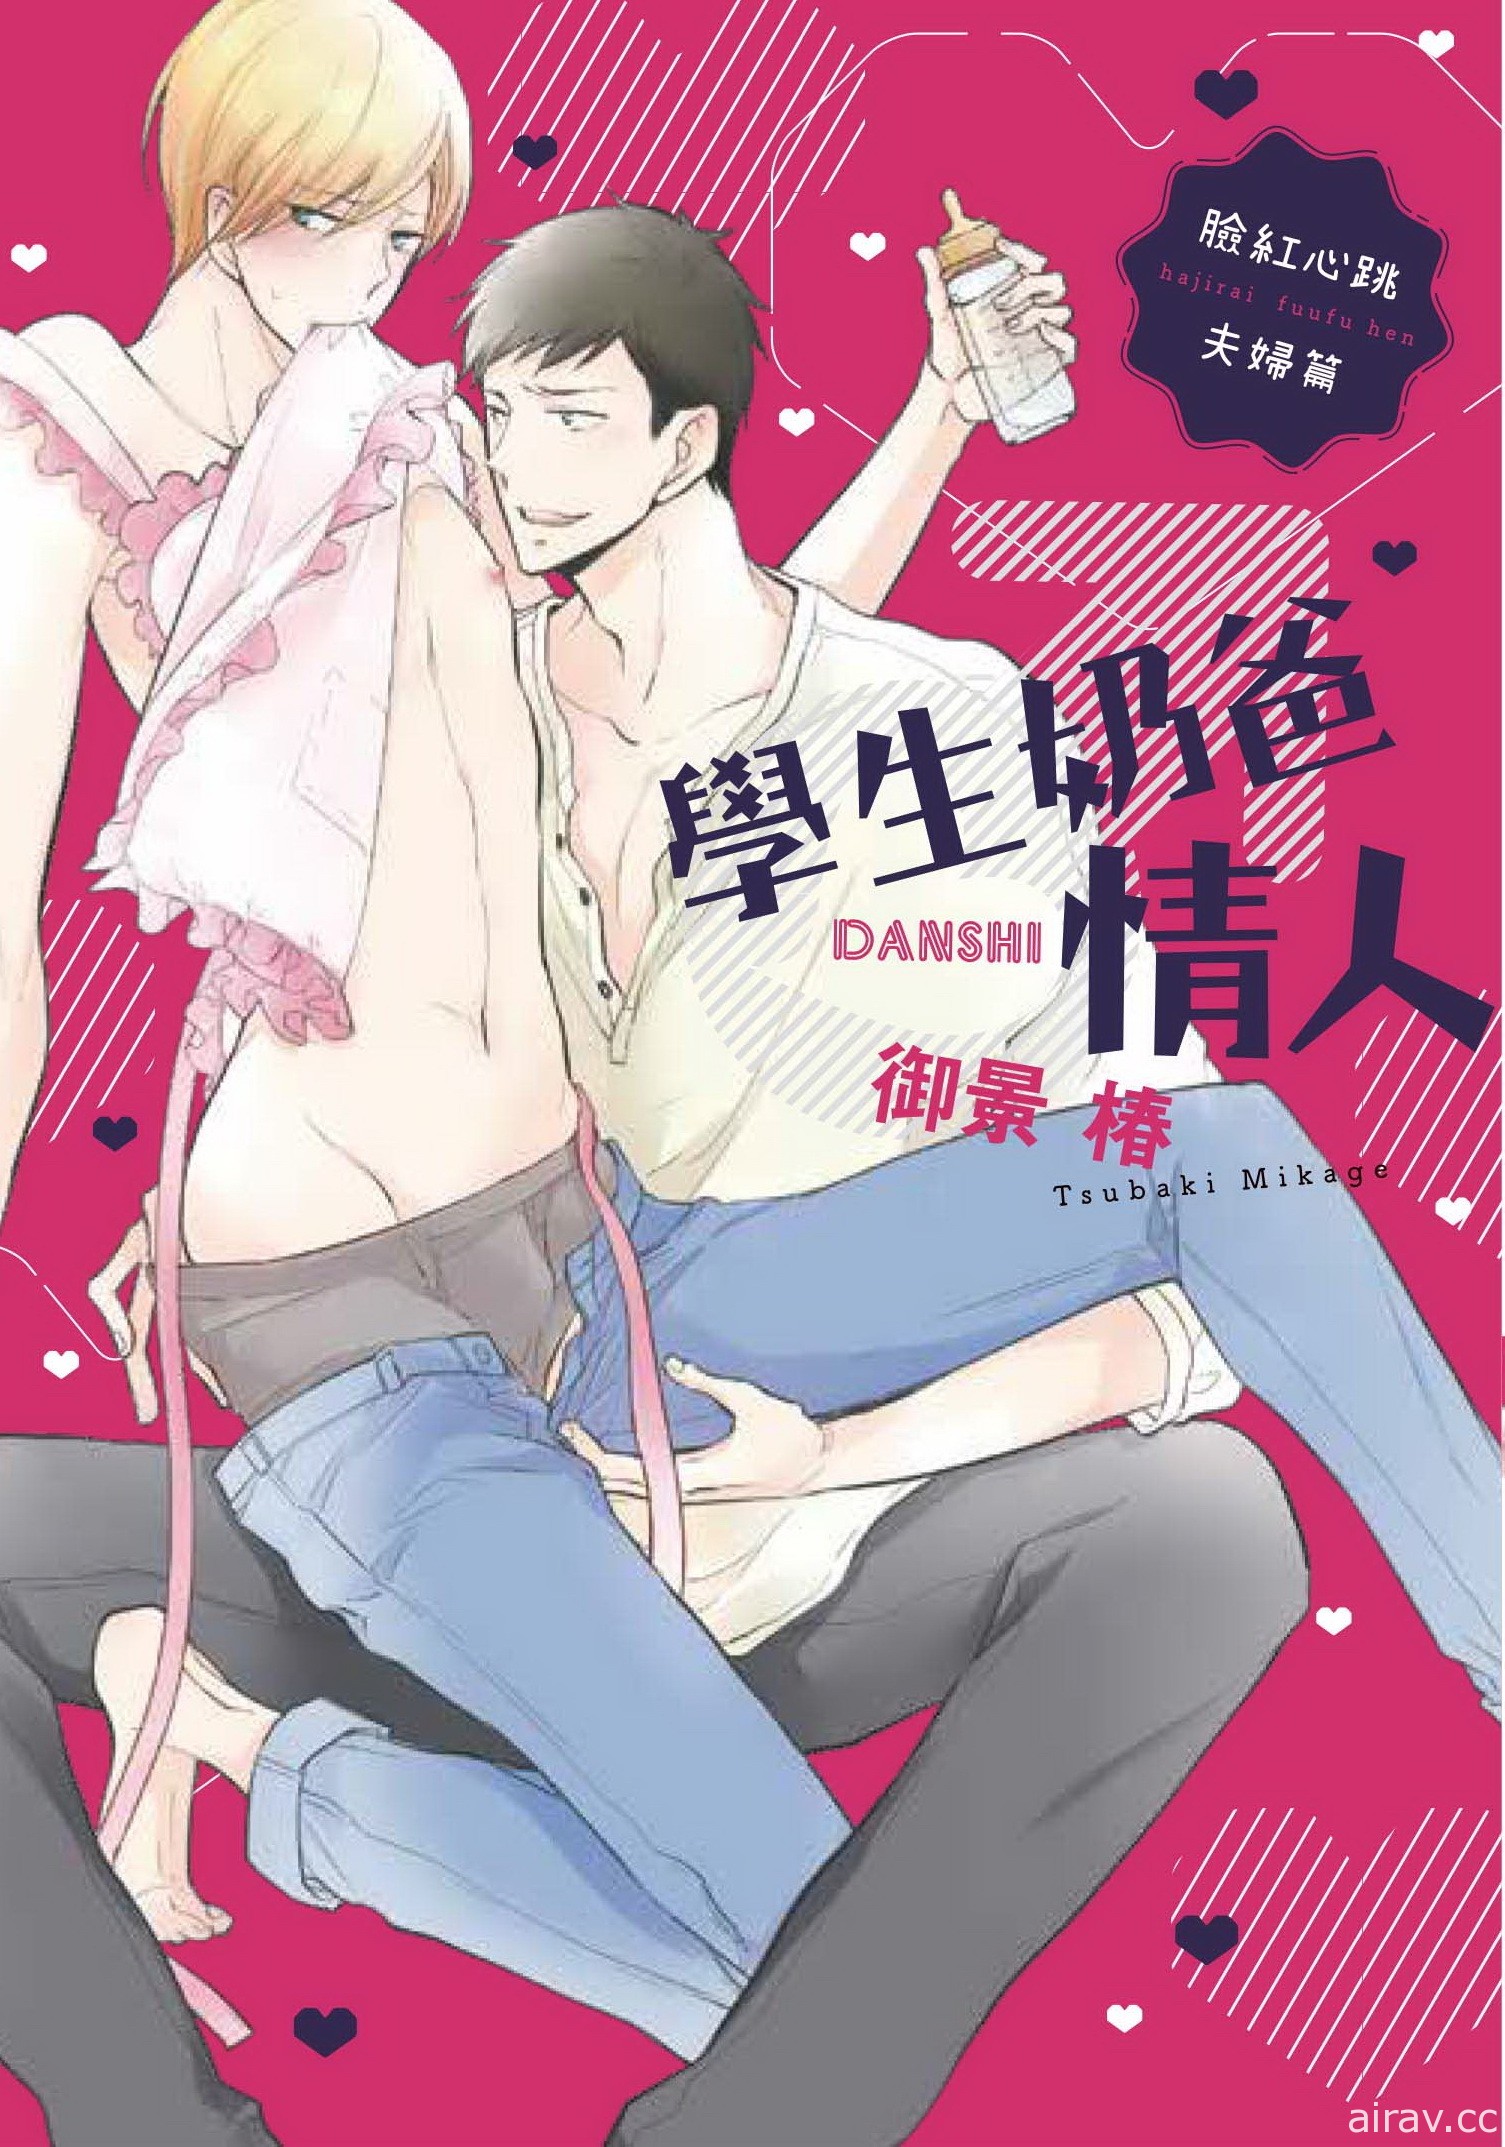 【書訊】台灣東販 4 月漫畫新書《昨日，你已長眠。》等作